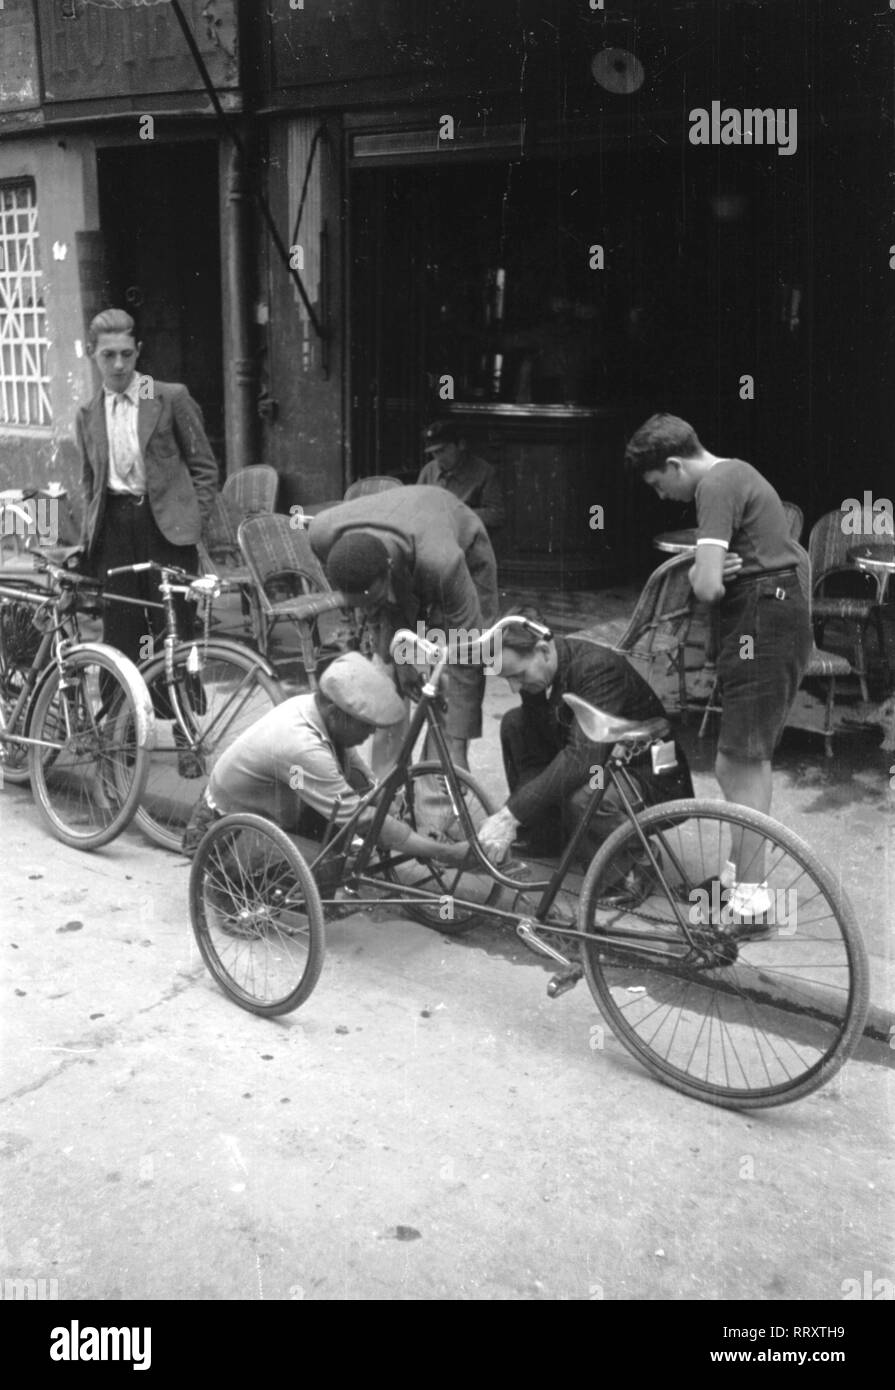 Men - Männer beim Reparieren eines Fahrrads, 1950er Jahre. Men repairing a trcycle, ca. 1950s. Stock Photo